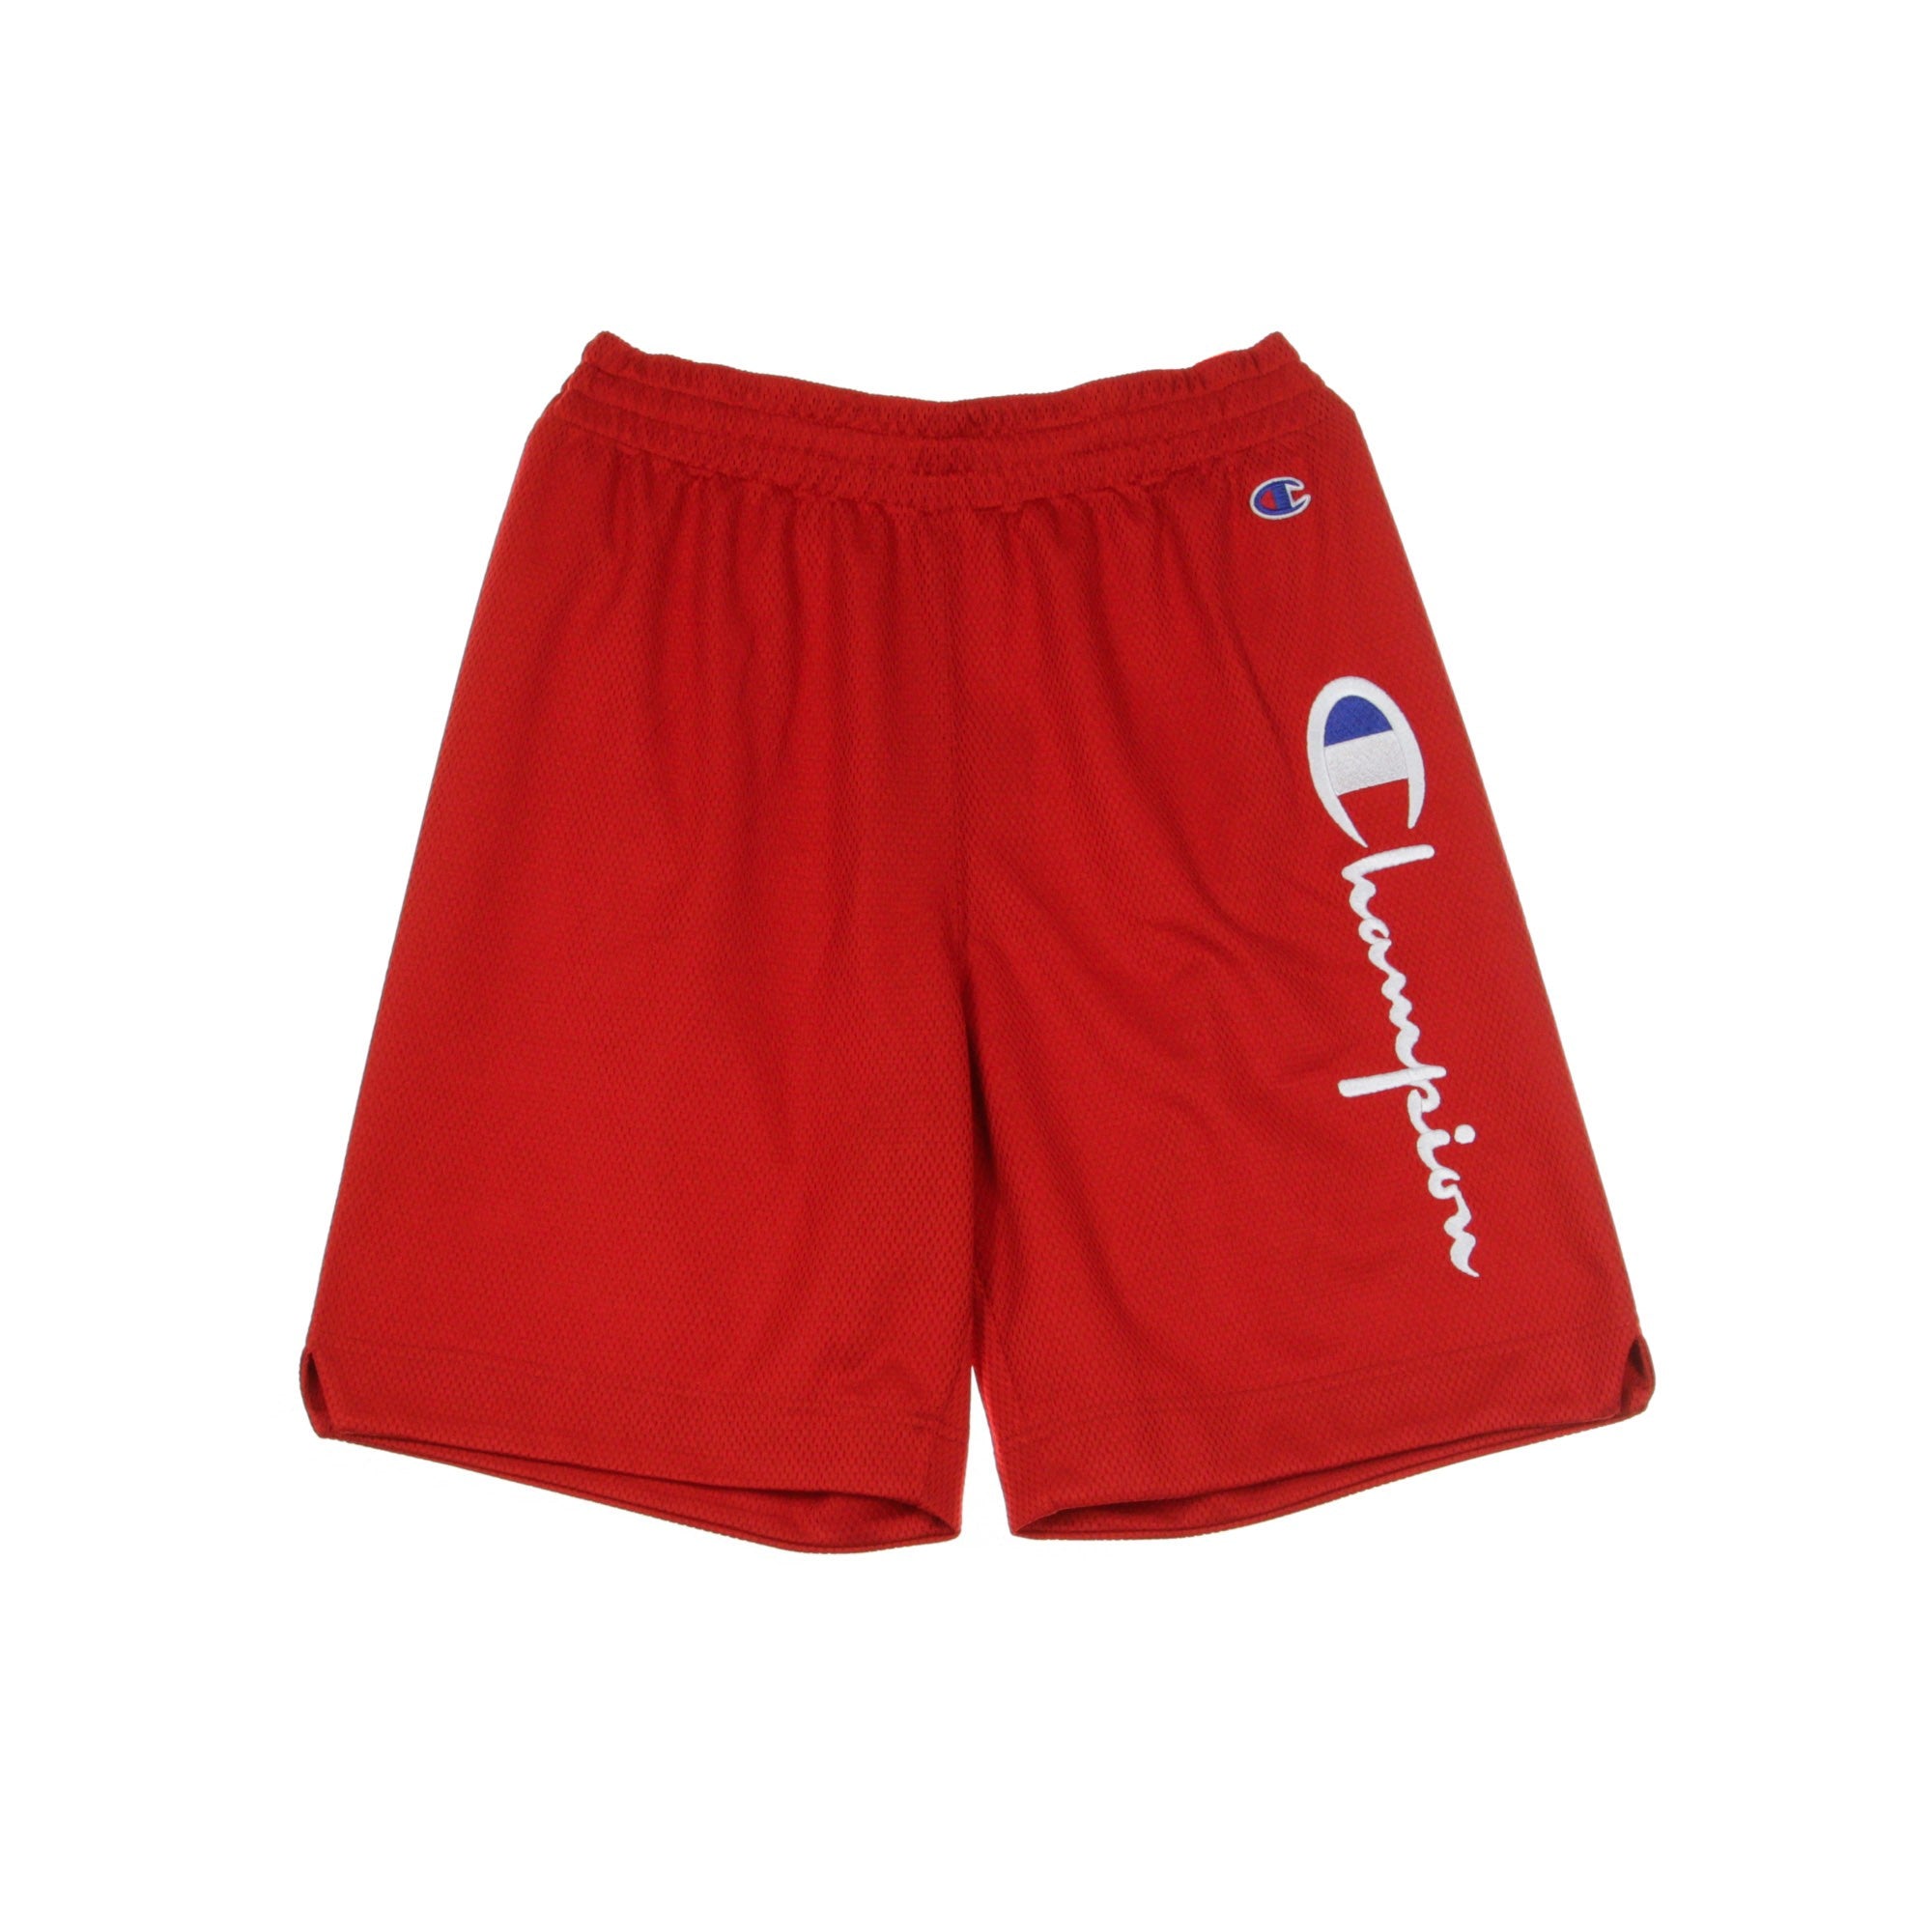 Men's Basketball Shorts Shorts Red